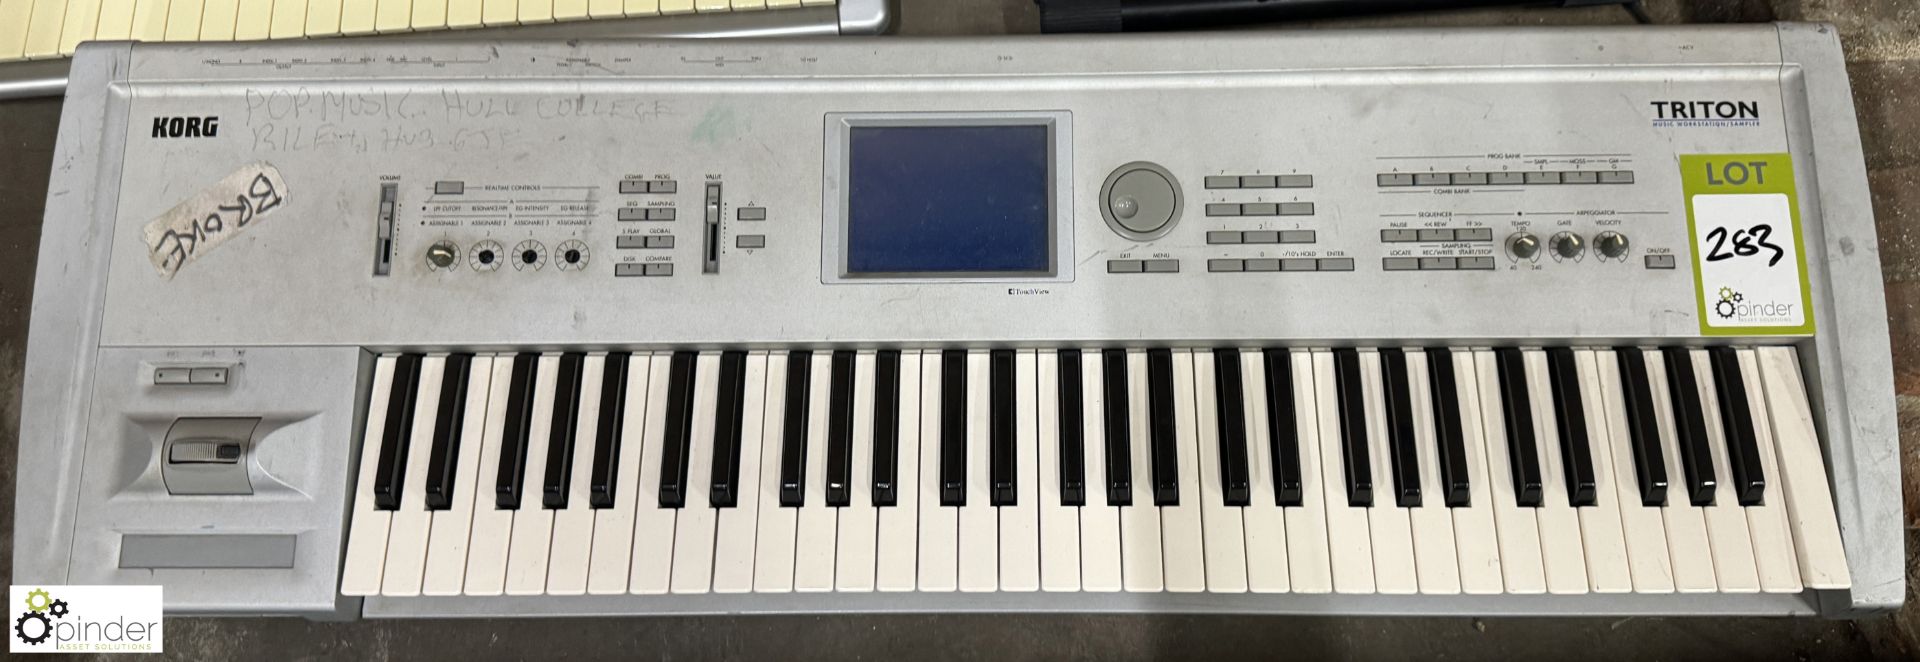 Korg Triton Keyboard - Image 2 of 7